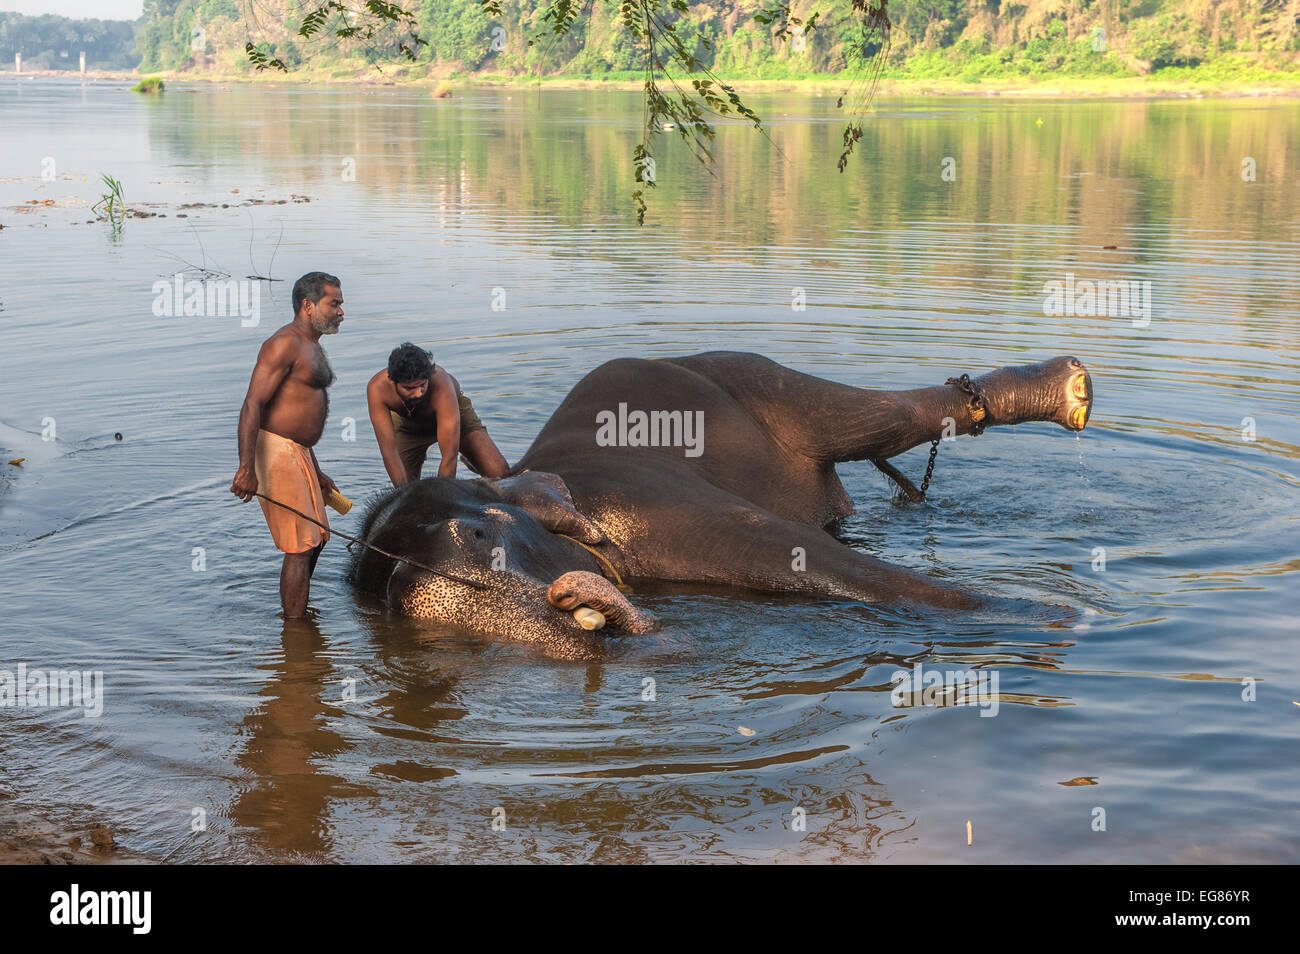 KERALA, INDIA - January, 12: Elephant bathing at Kodanad training center on January, 12, 2013 in Kerala, India Stock Photo